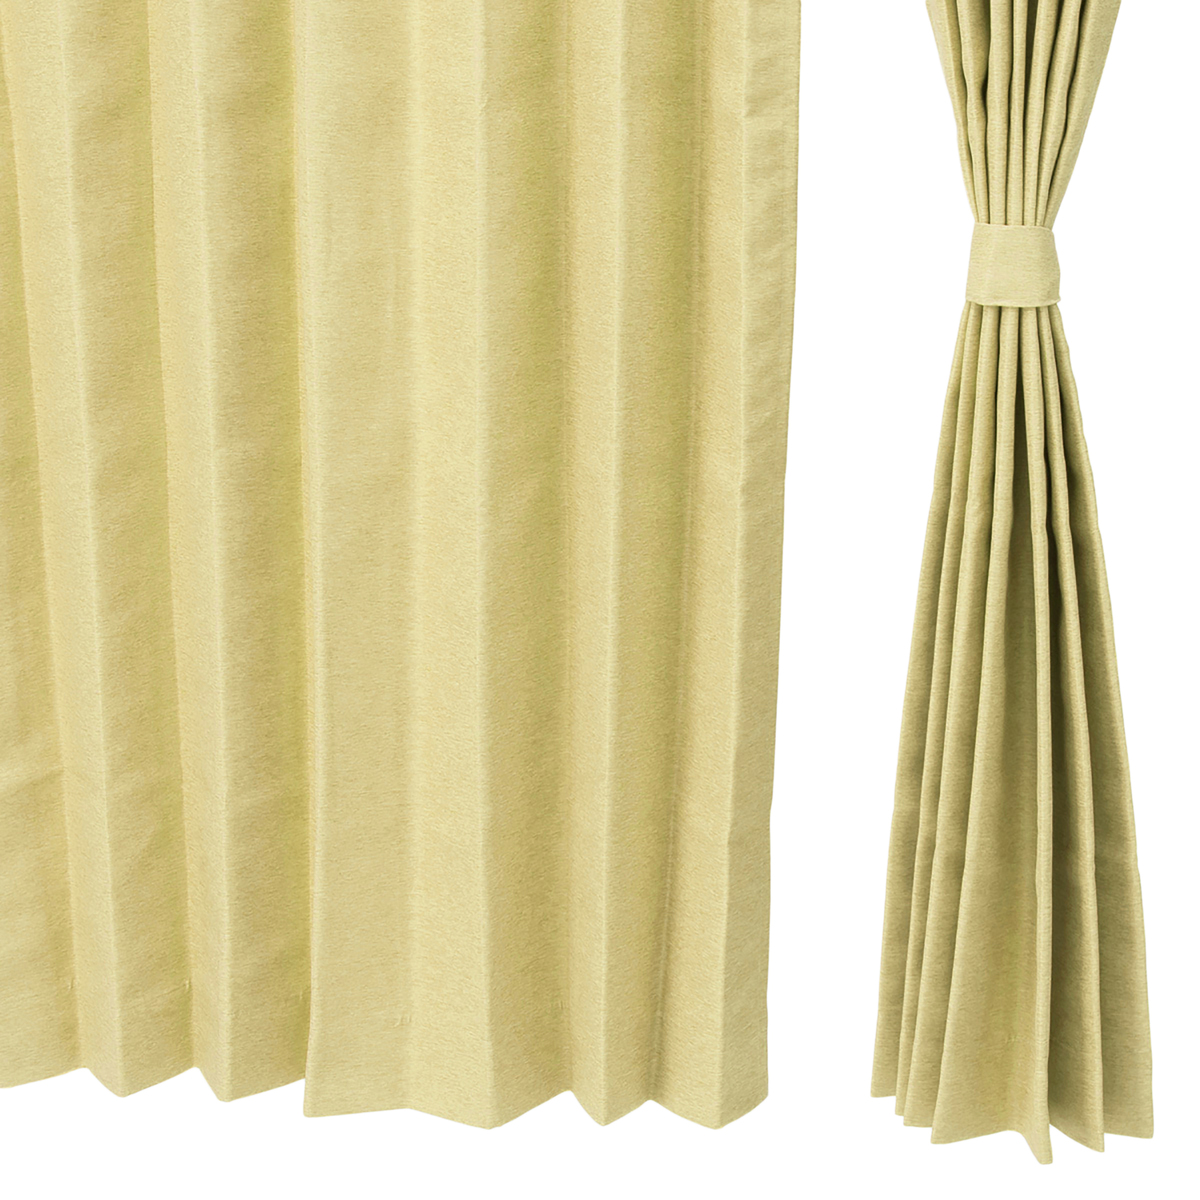  熱と光を遮るドレープカーテン高級仕立100cm2枚組  幅100x丈220cm  イエローグリーン